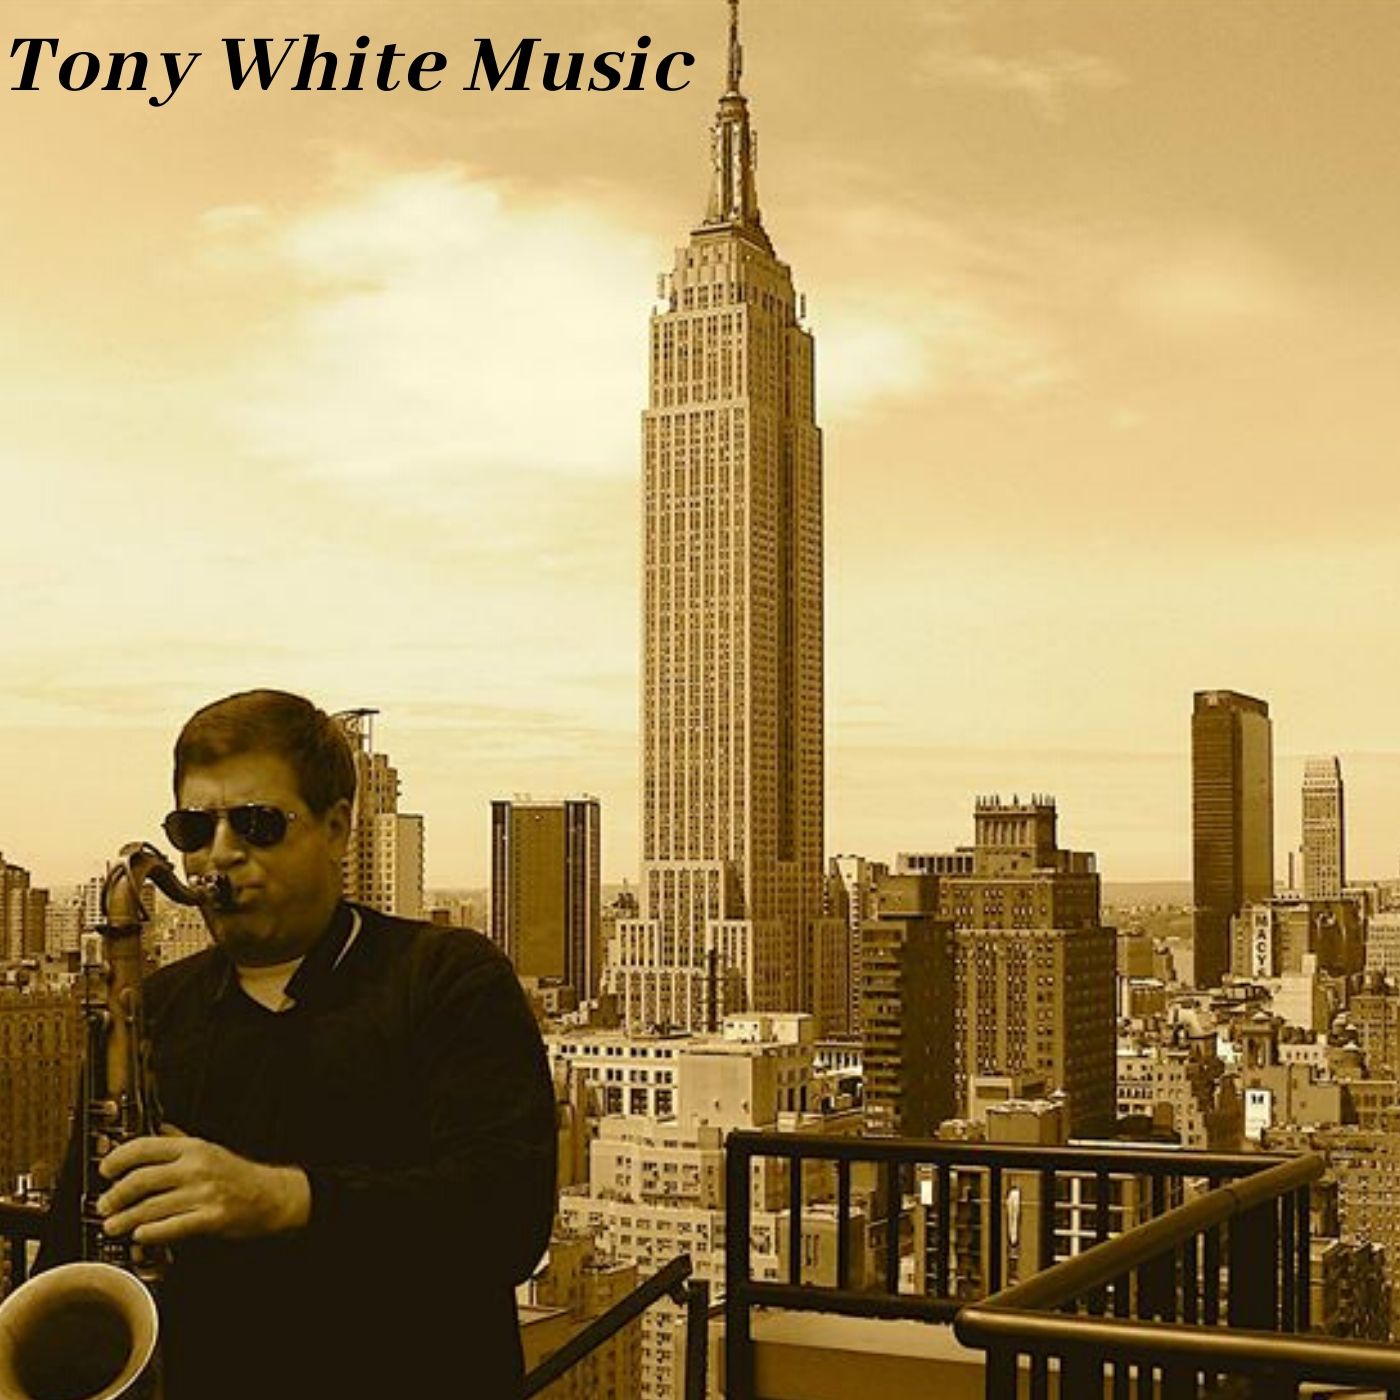 Tony White Music Album Cover